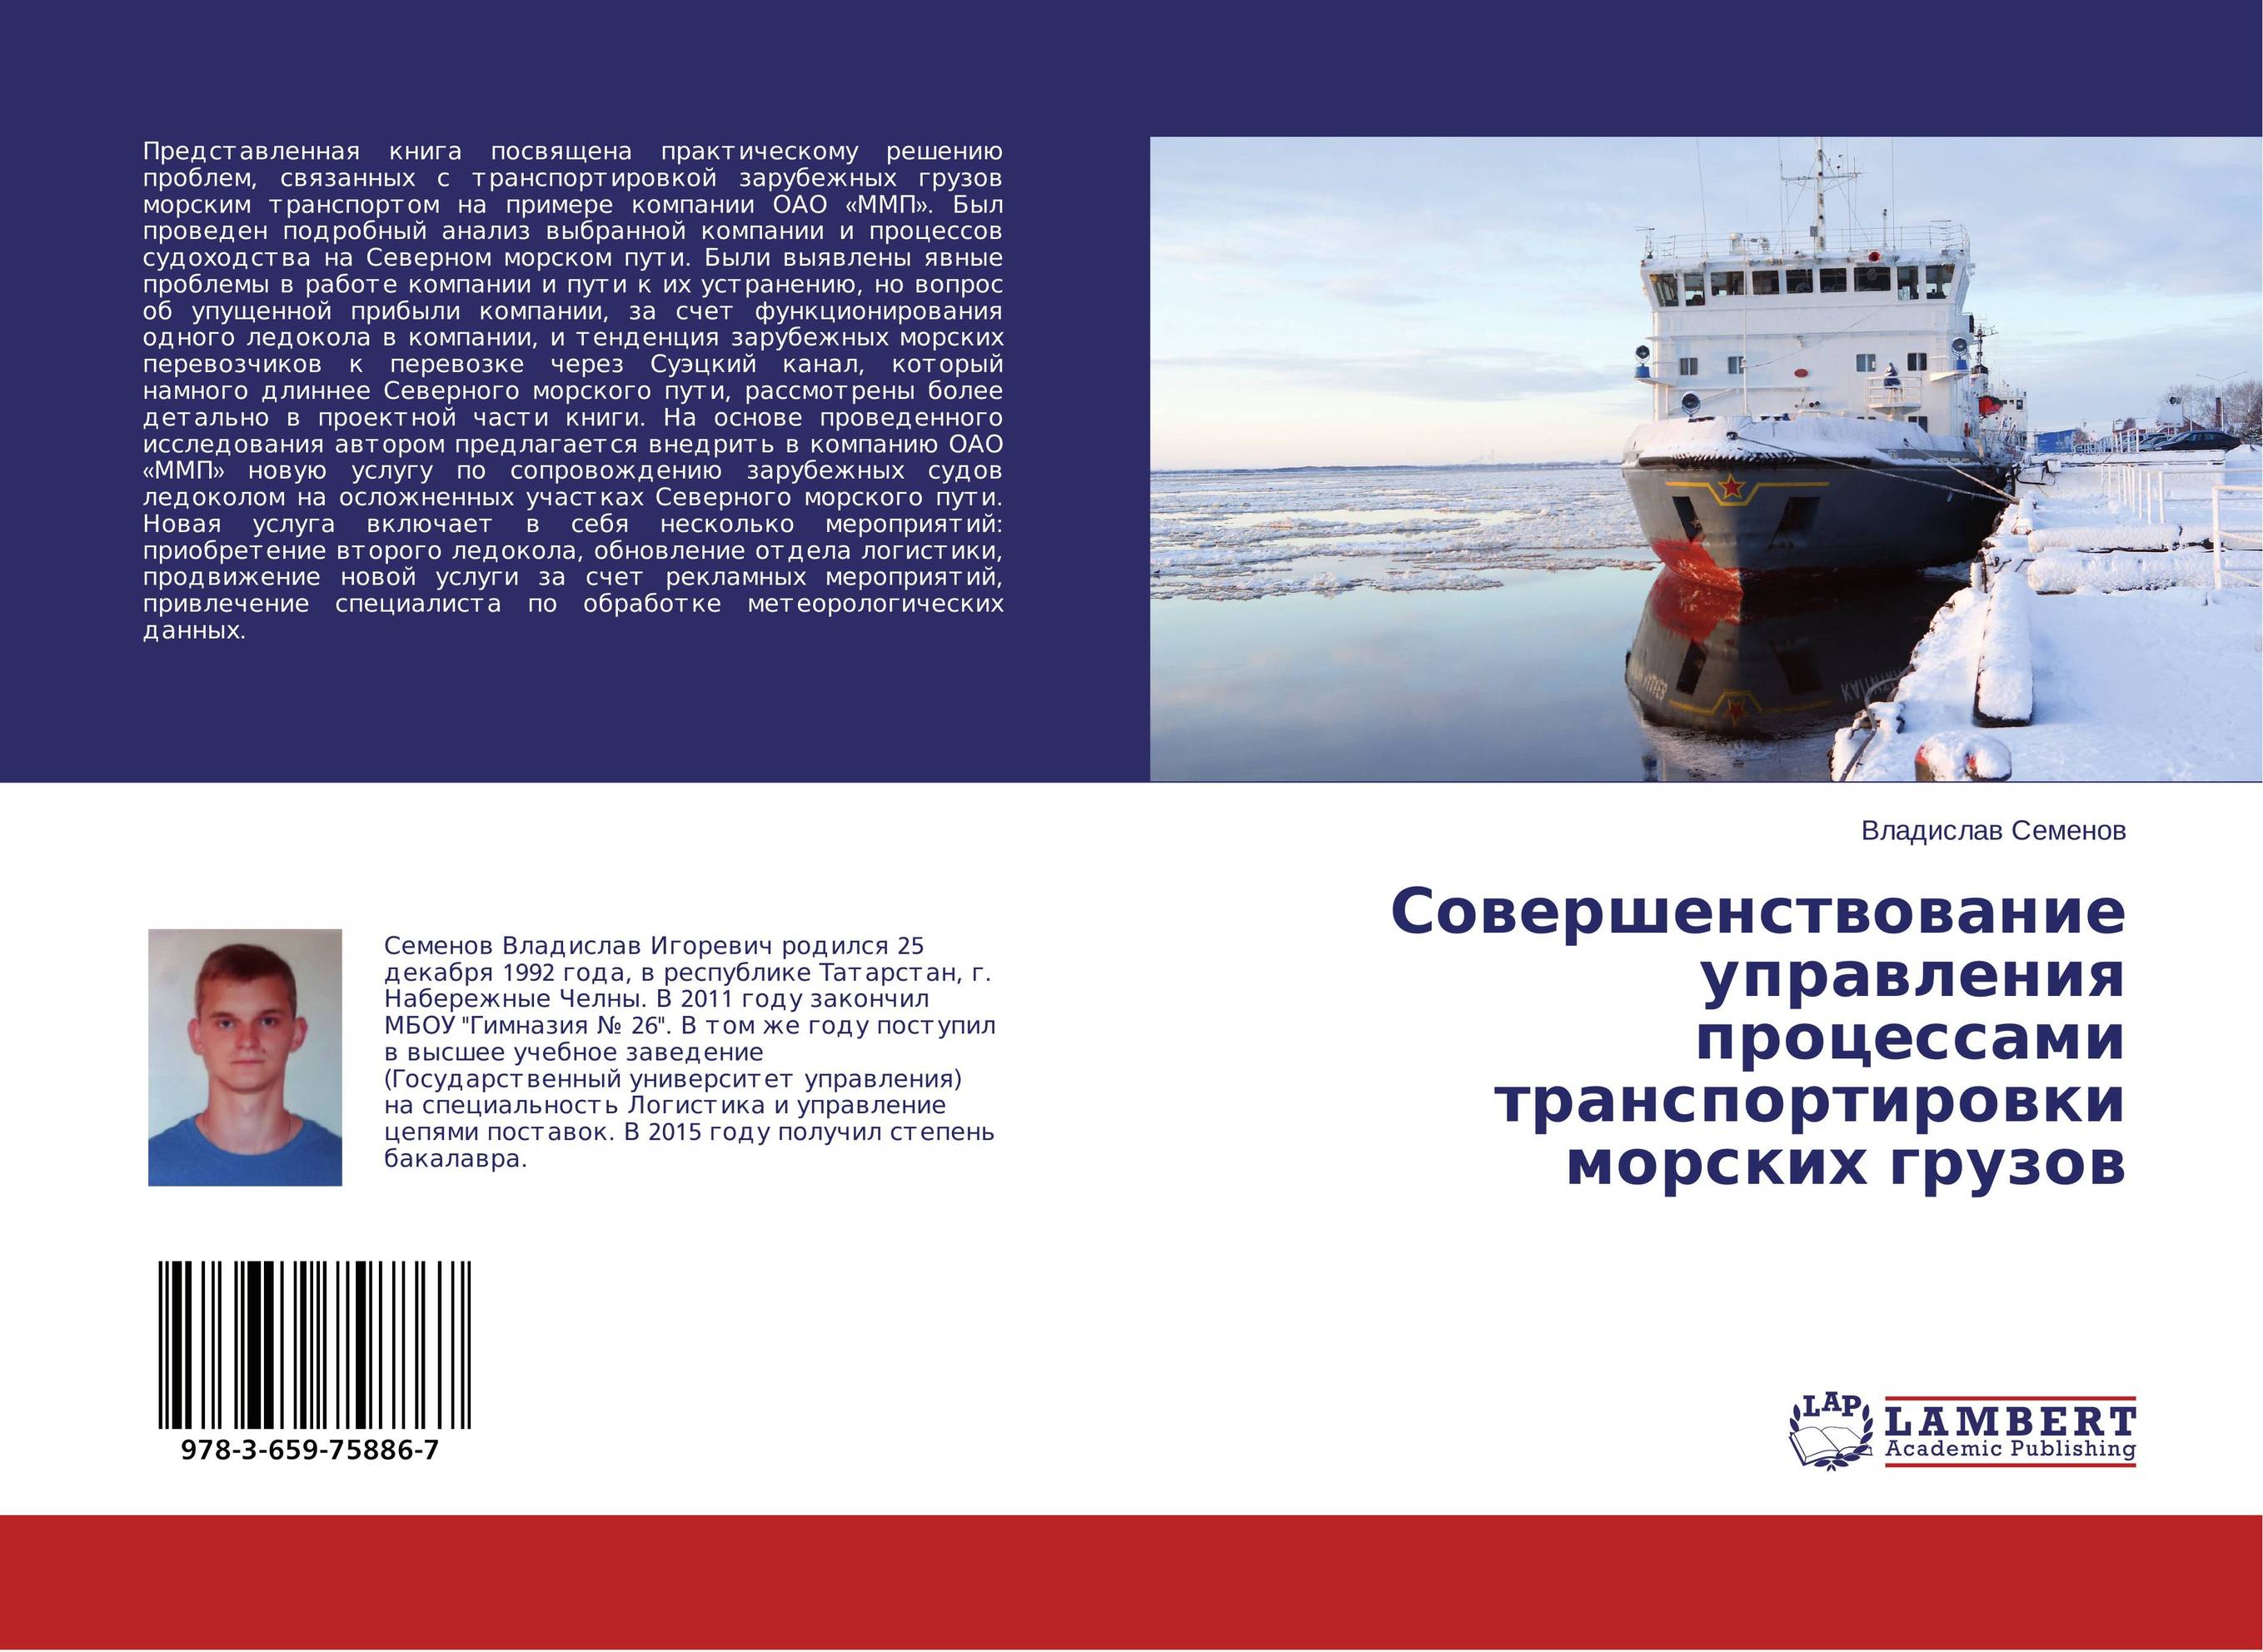 
        Совершенствование управления процессами транспортировки морских грузов..
      